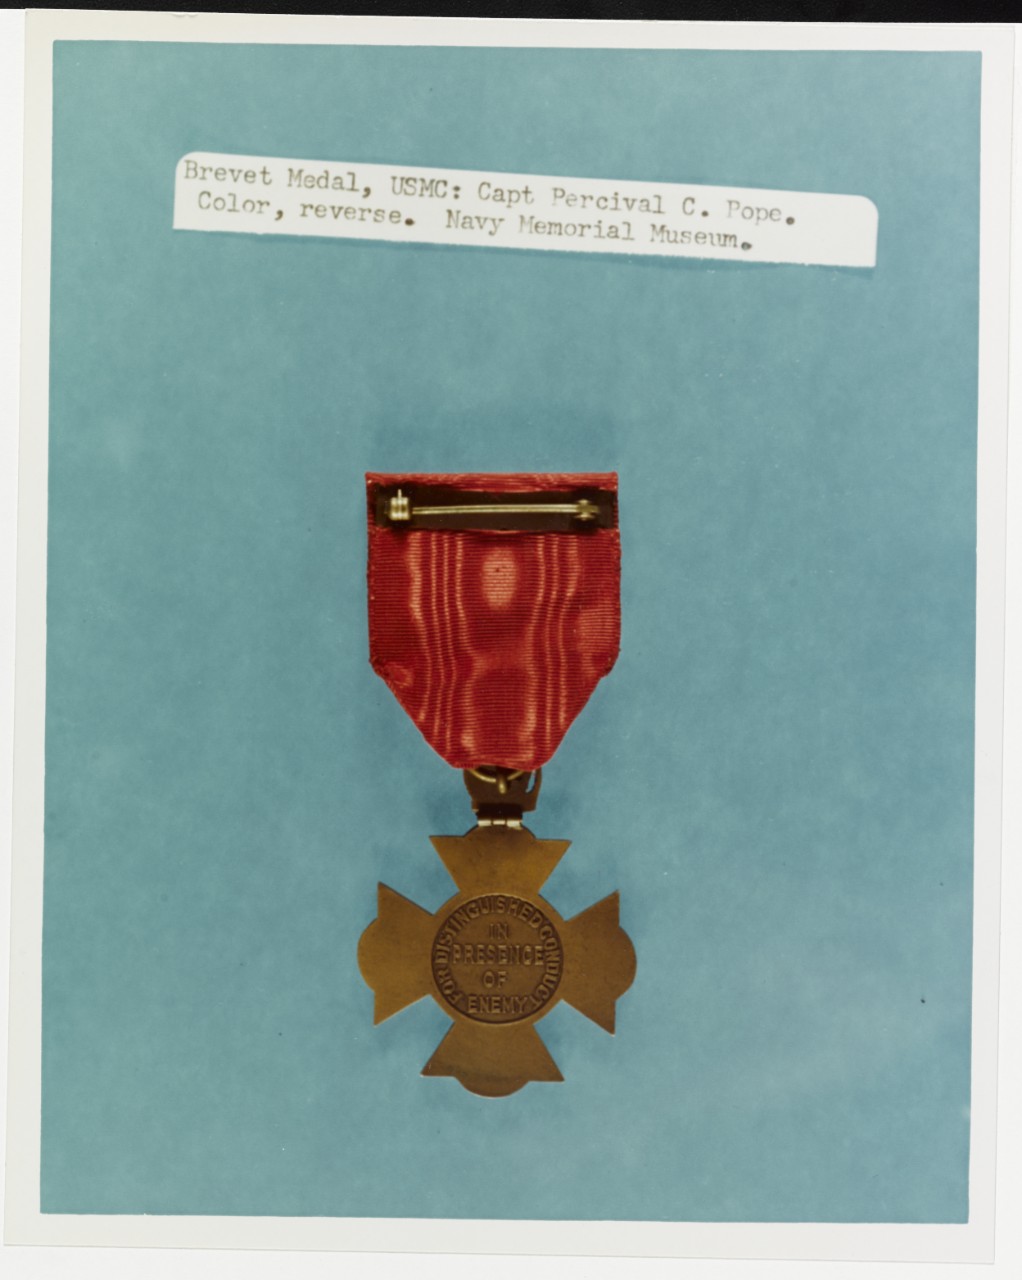 Brevet Medal, United States Marine Corps